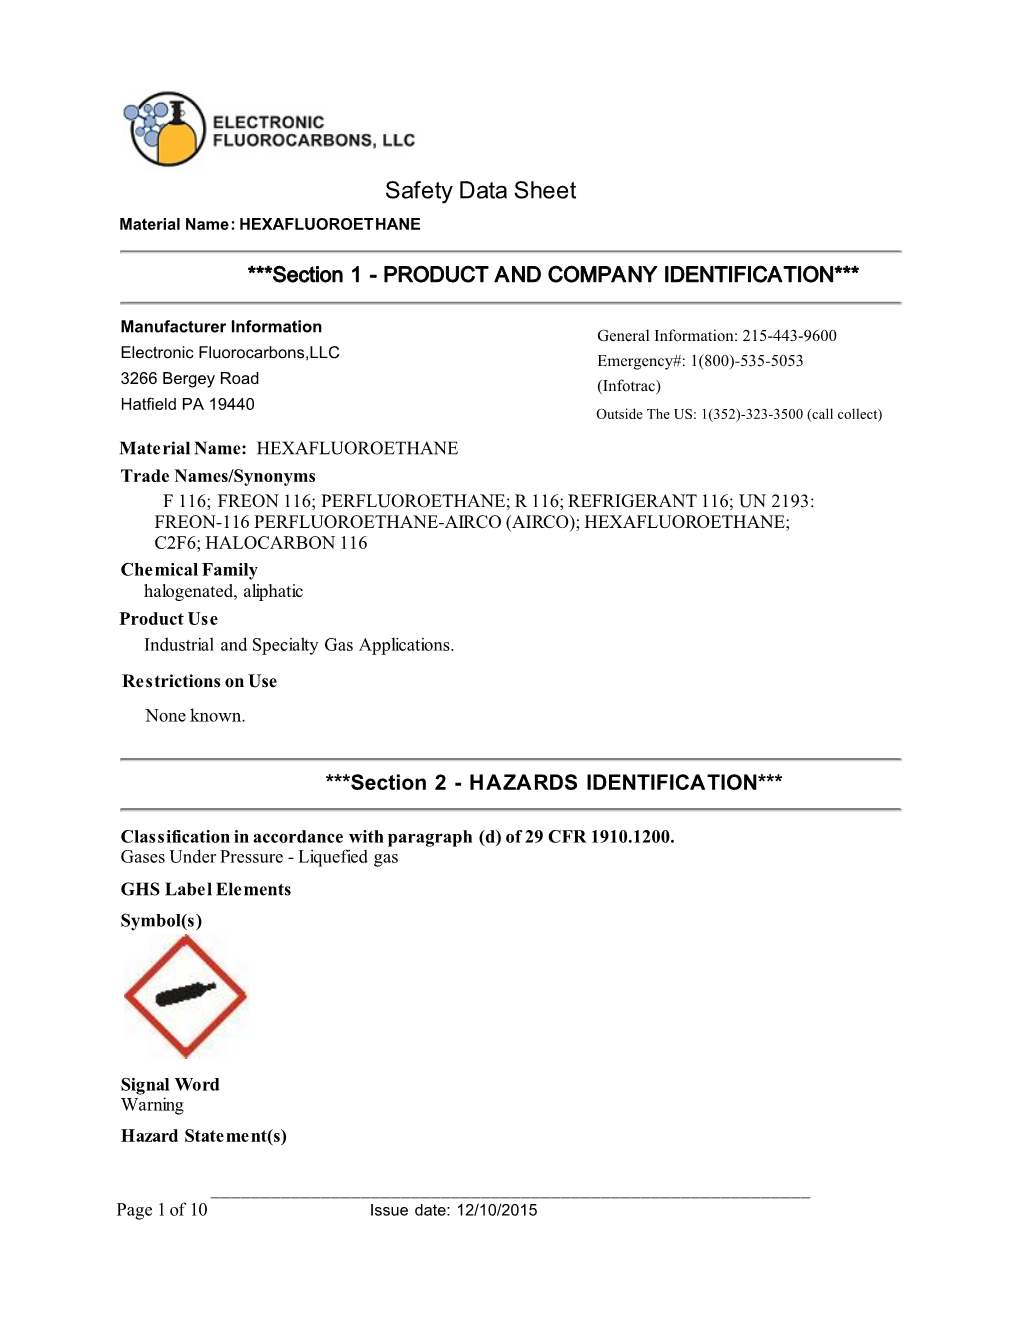 Safety Data Sheet Material Name: HEXAFLUOROETHANE